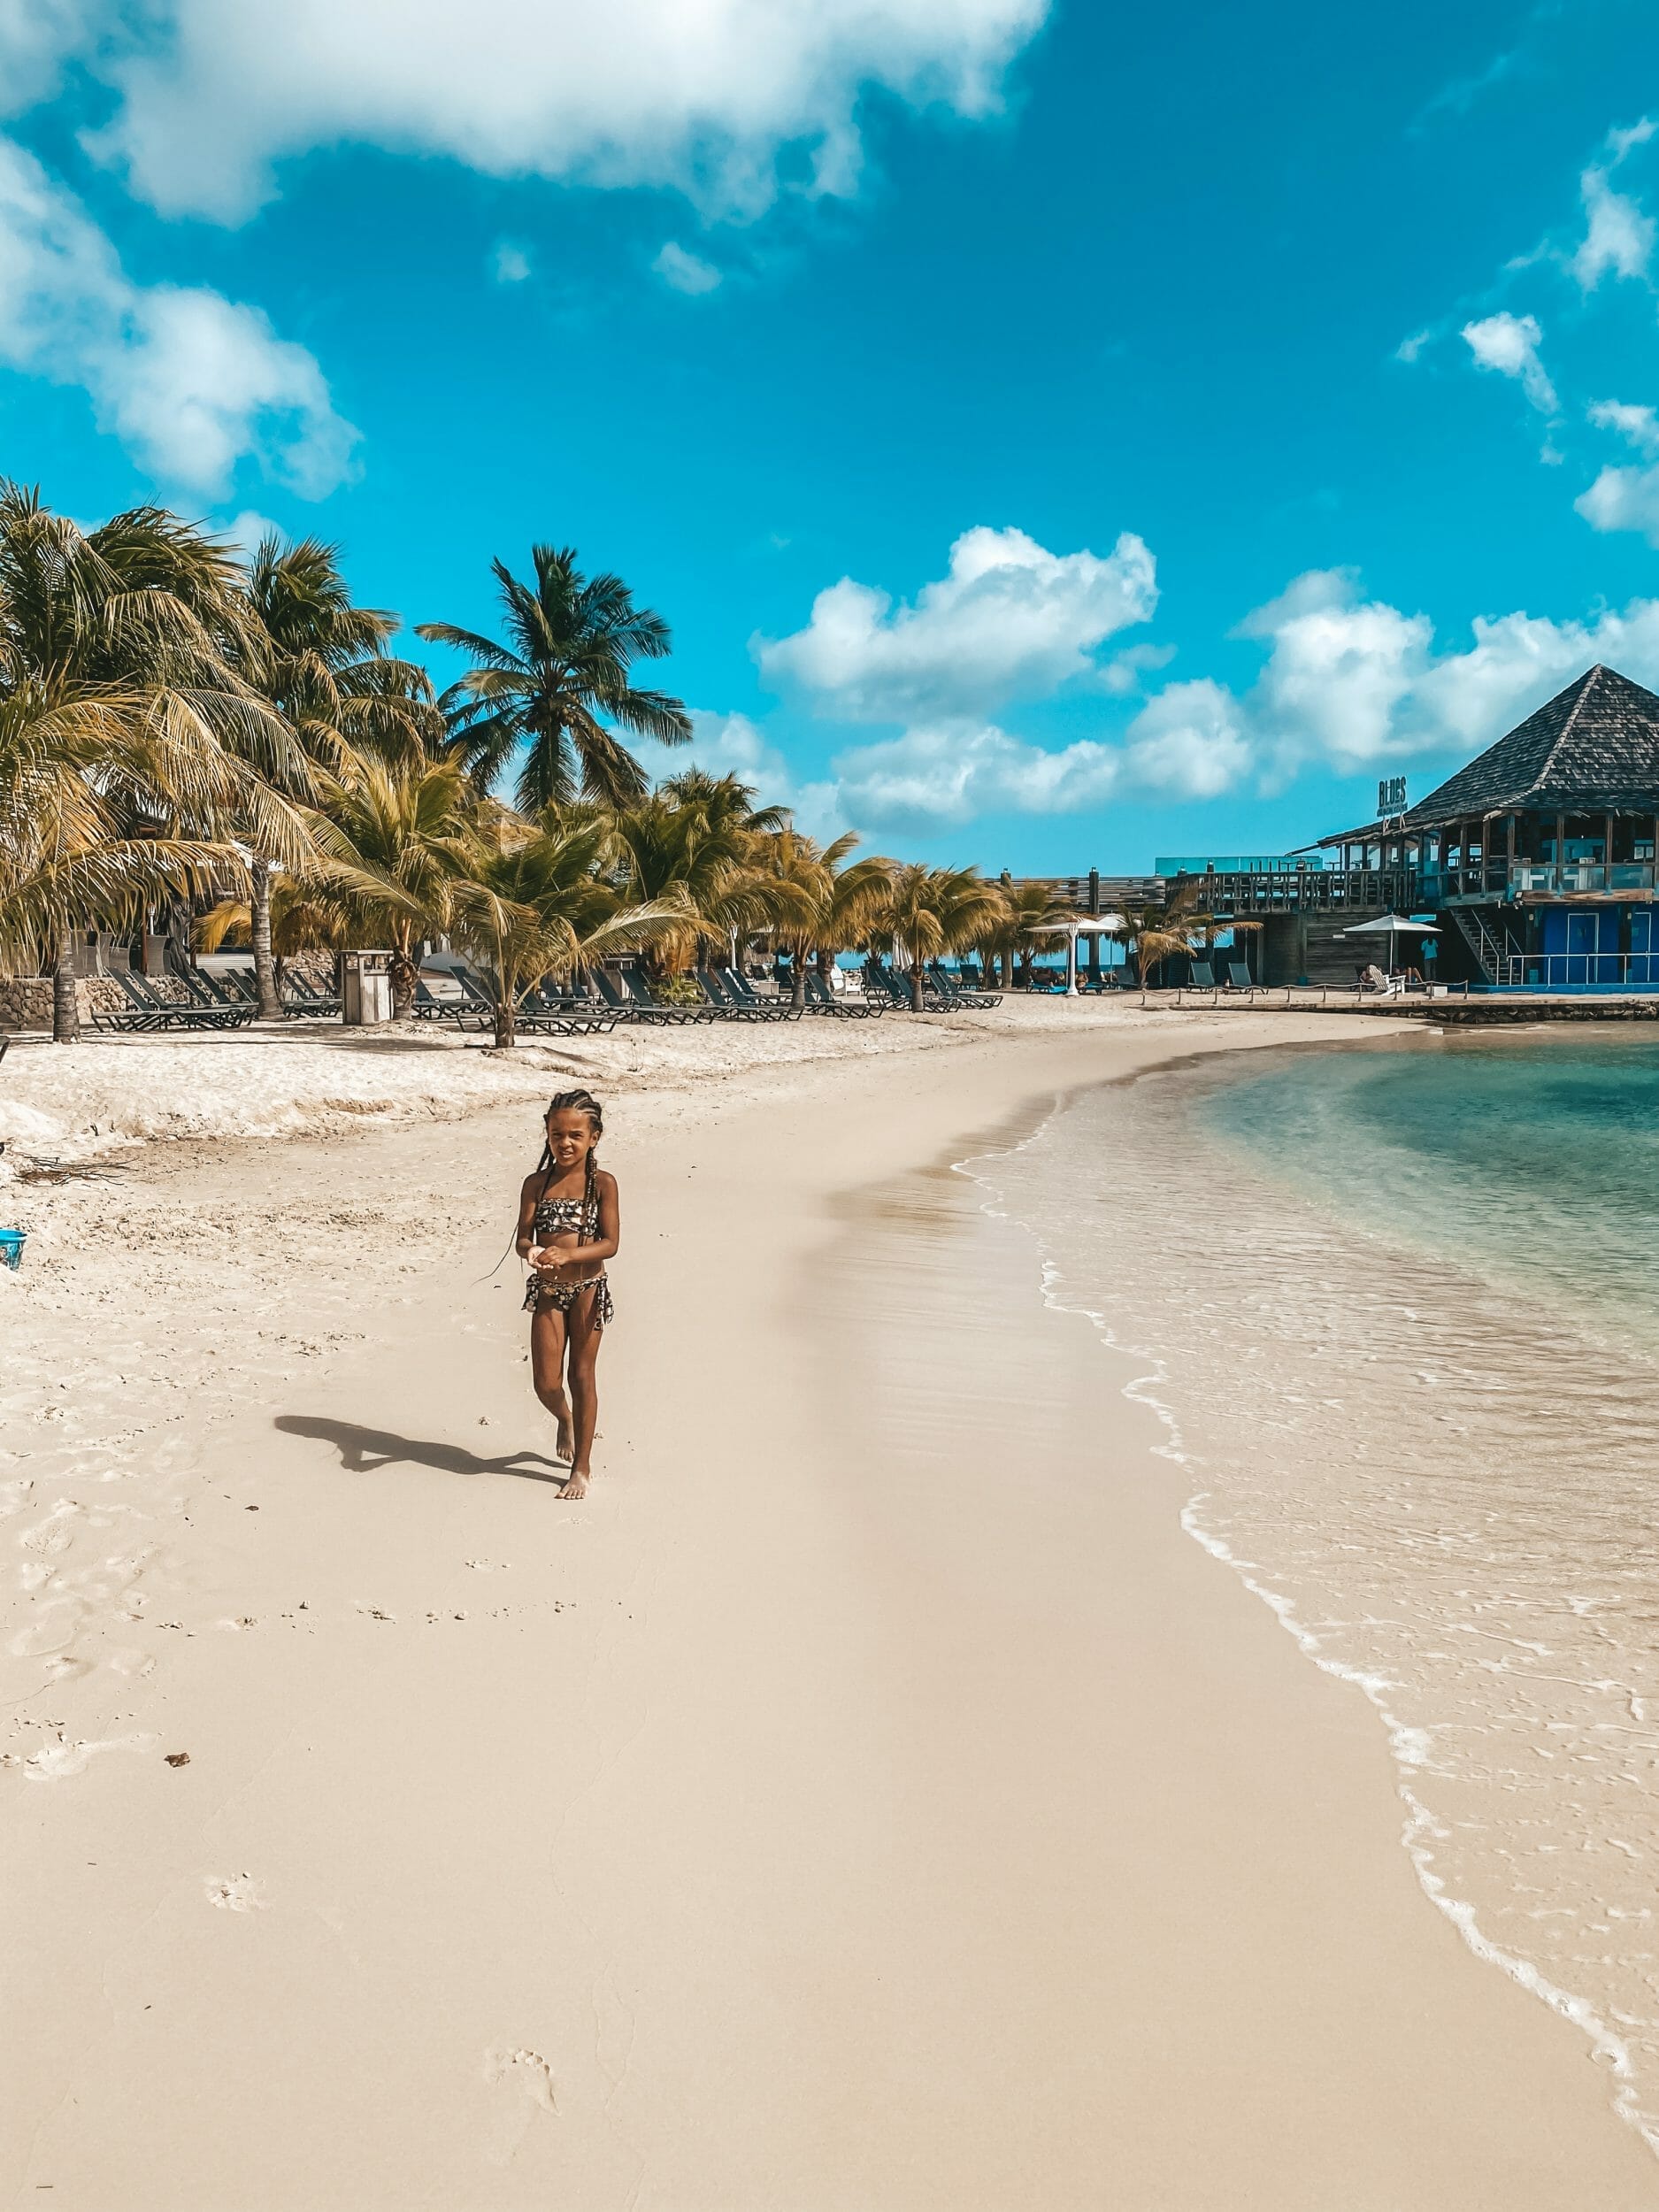 Experience luxury at Avila Beach Hotel's Curacao beach